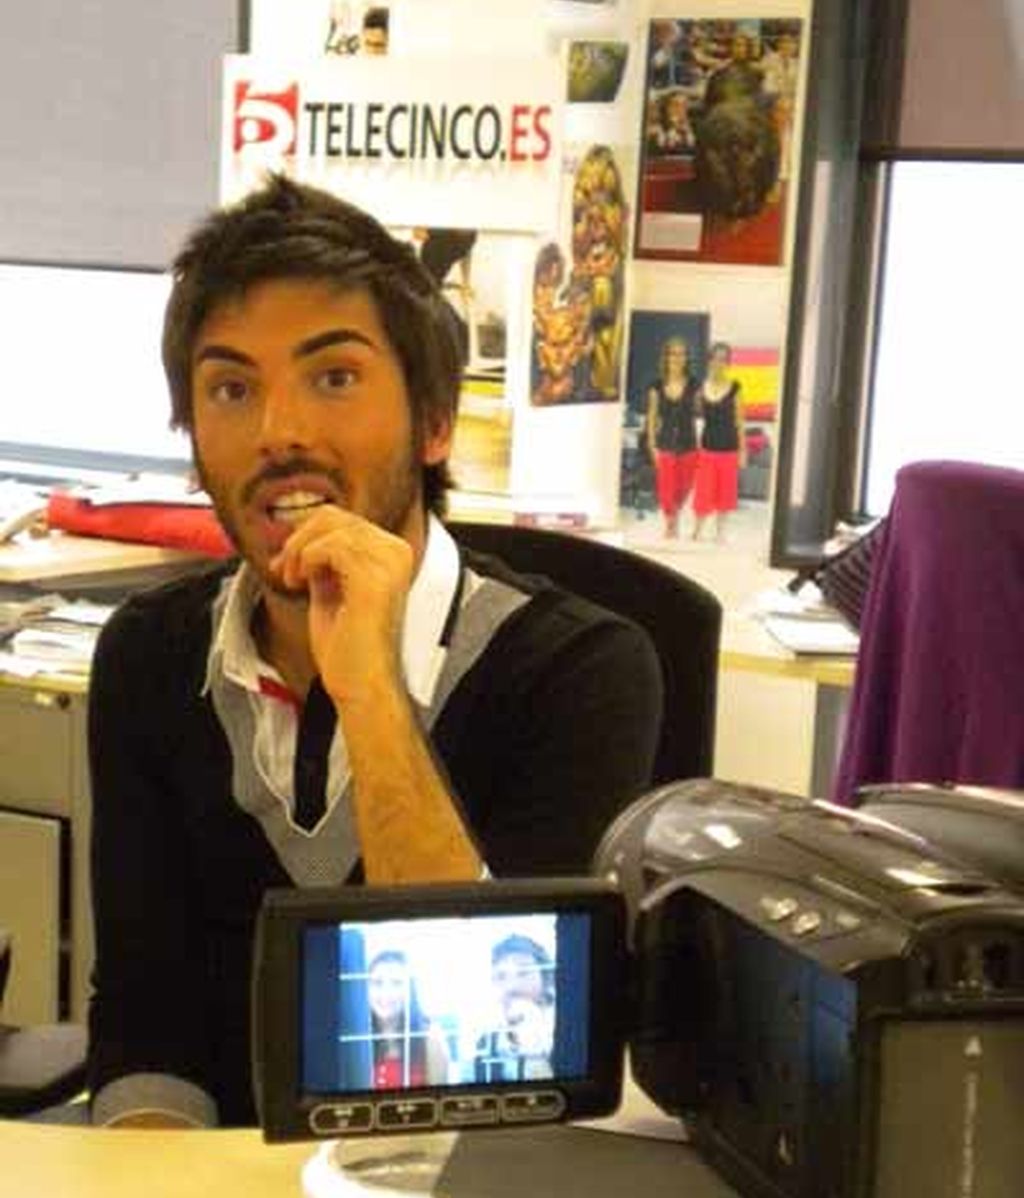 Elias de 'OT' en Telecinco.es